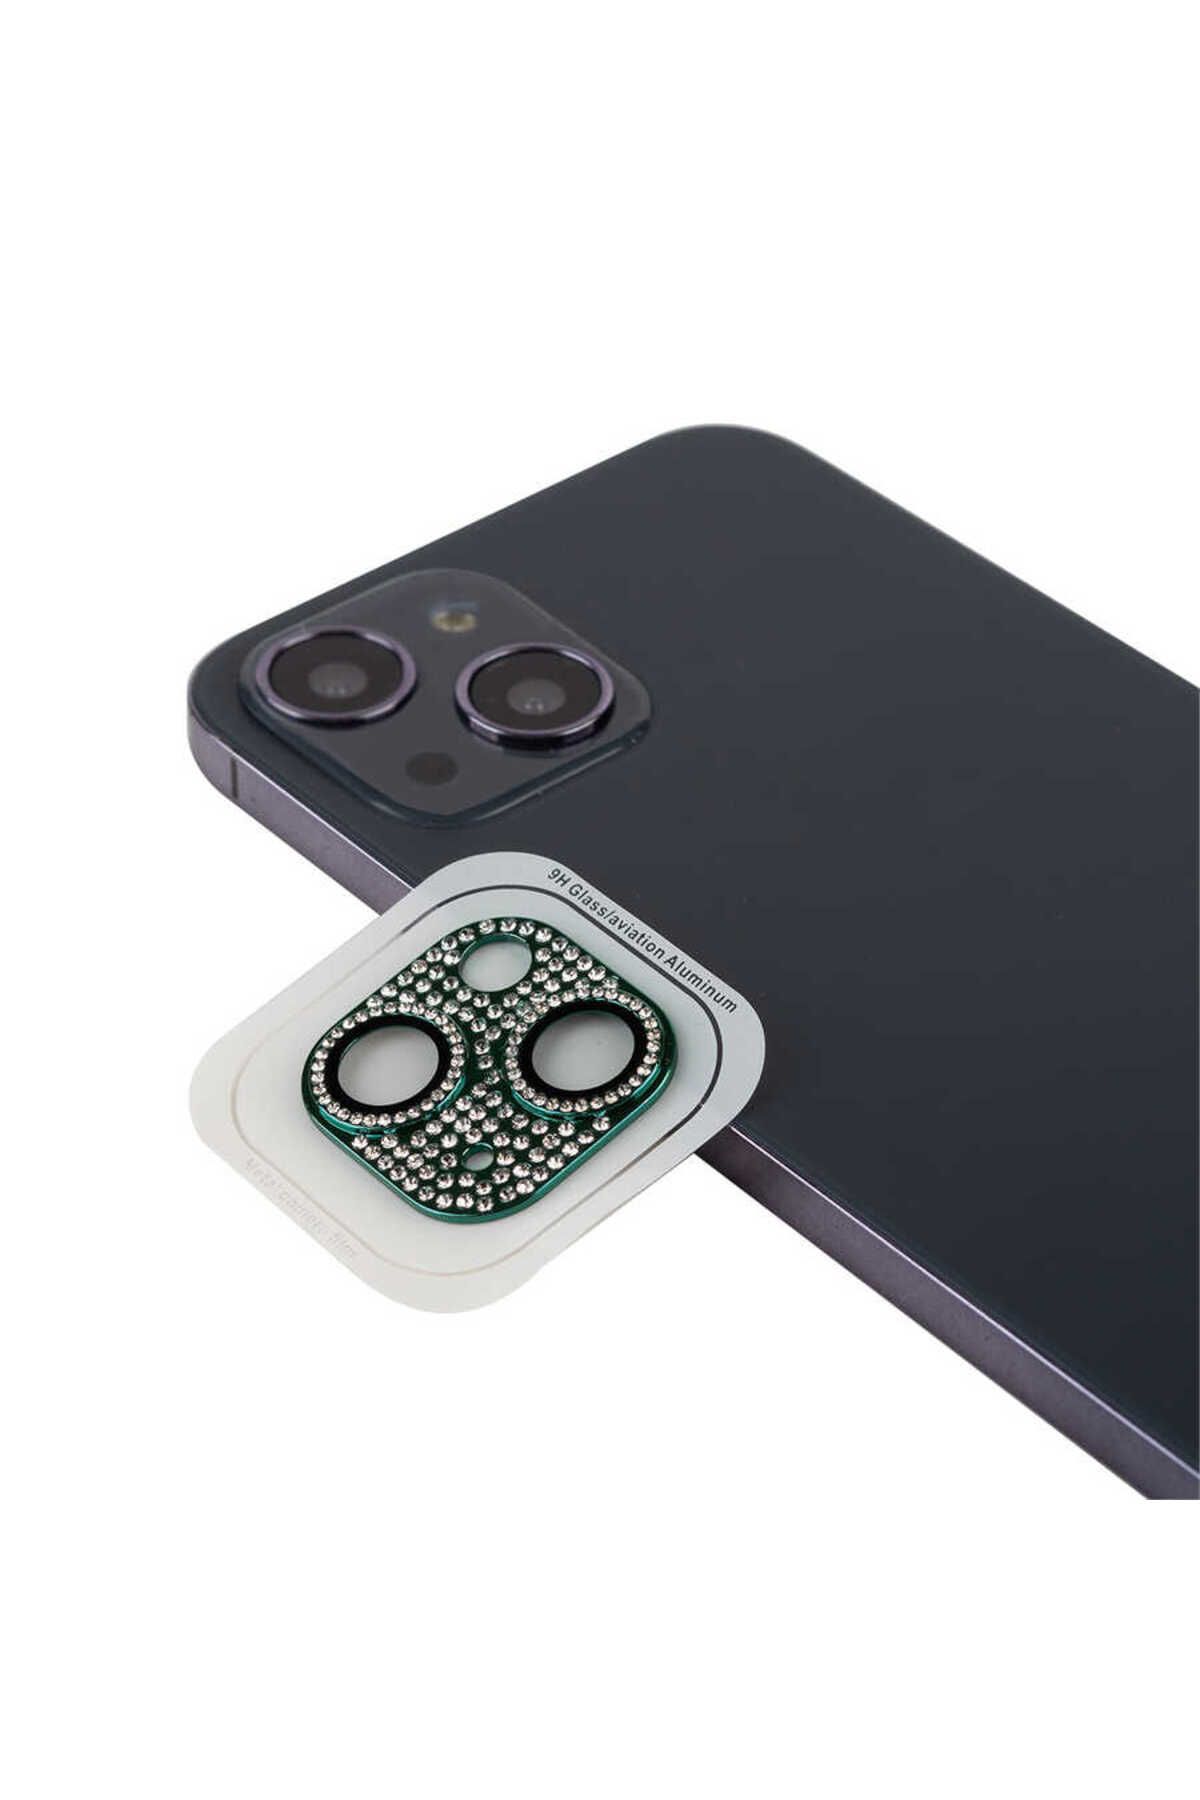 Zore iPhone 13 Mini Uyumlu Baltazar CL-08 Kamera Lens Koruyucu-Koyu Yeşil